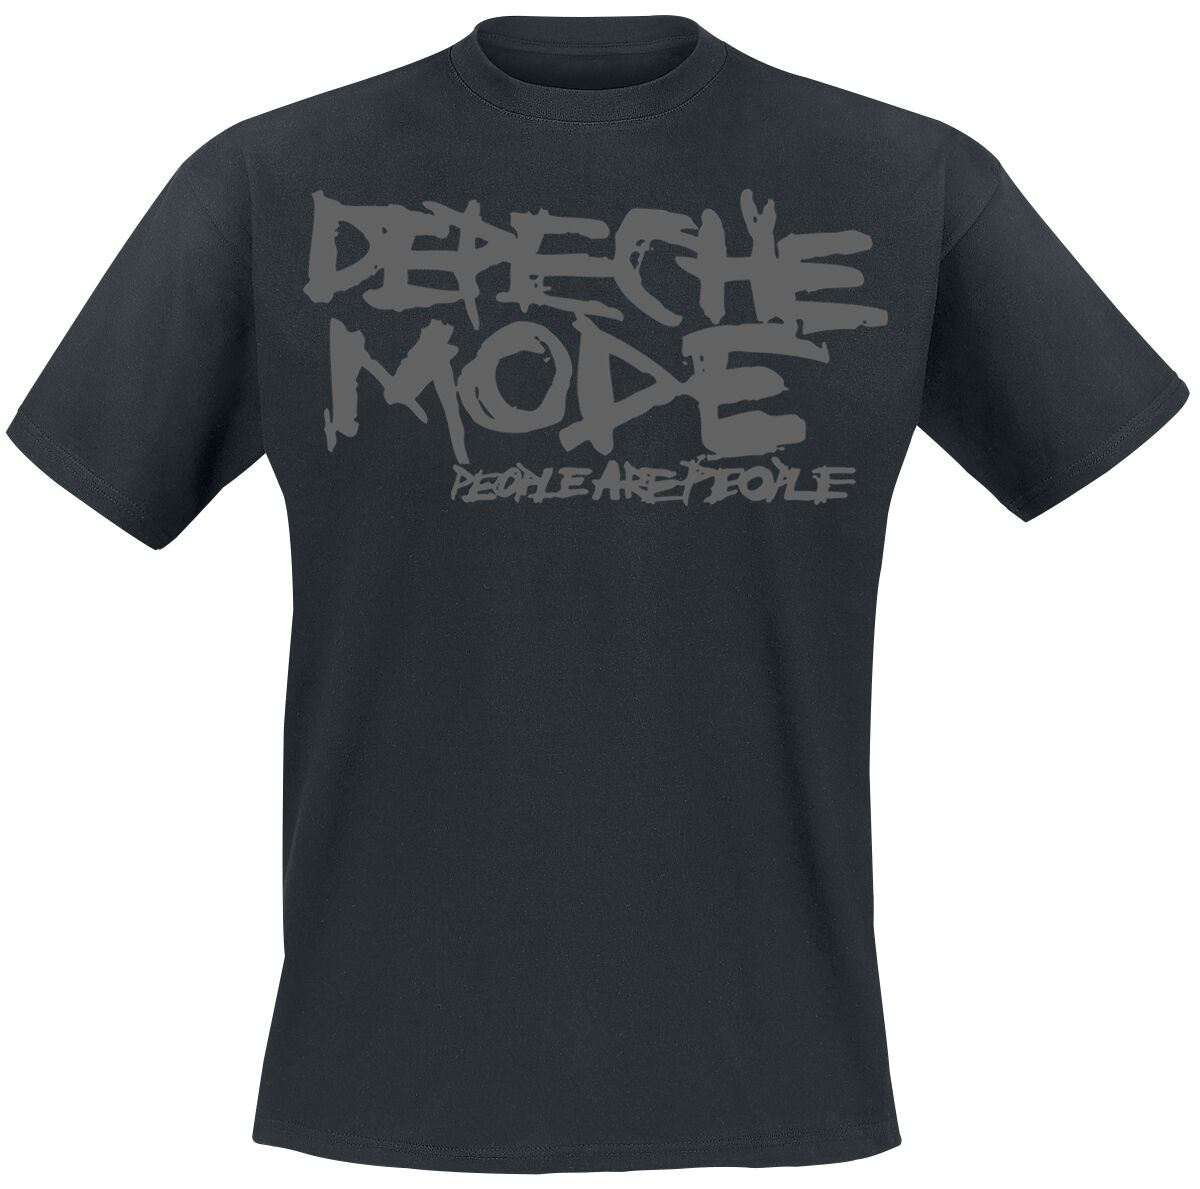 Depeche Mode T-Shirt - People Are People - S bis XXL - für Männer - Größe M - schwarz  - Lizenziertes Merchandise!